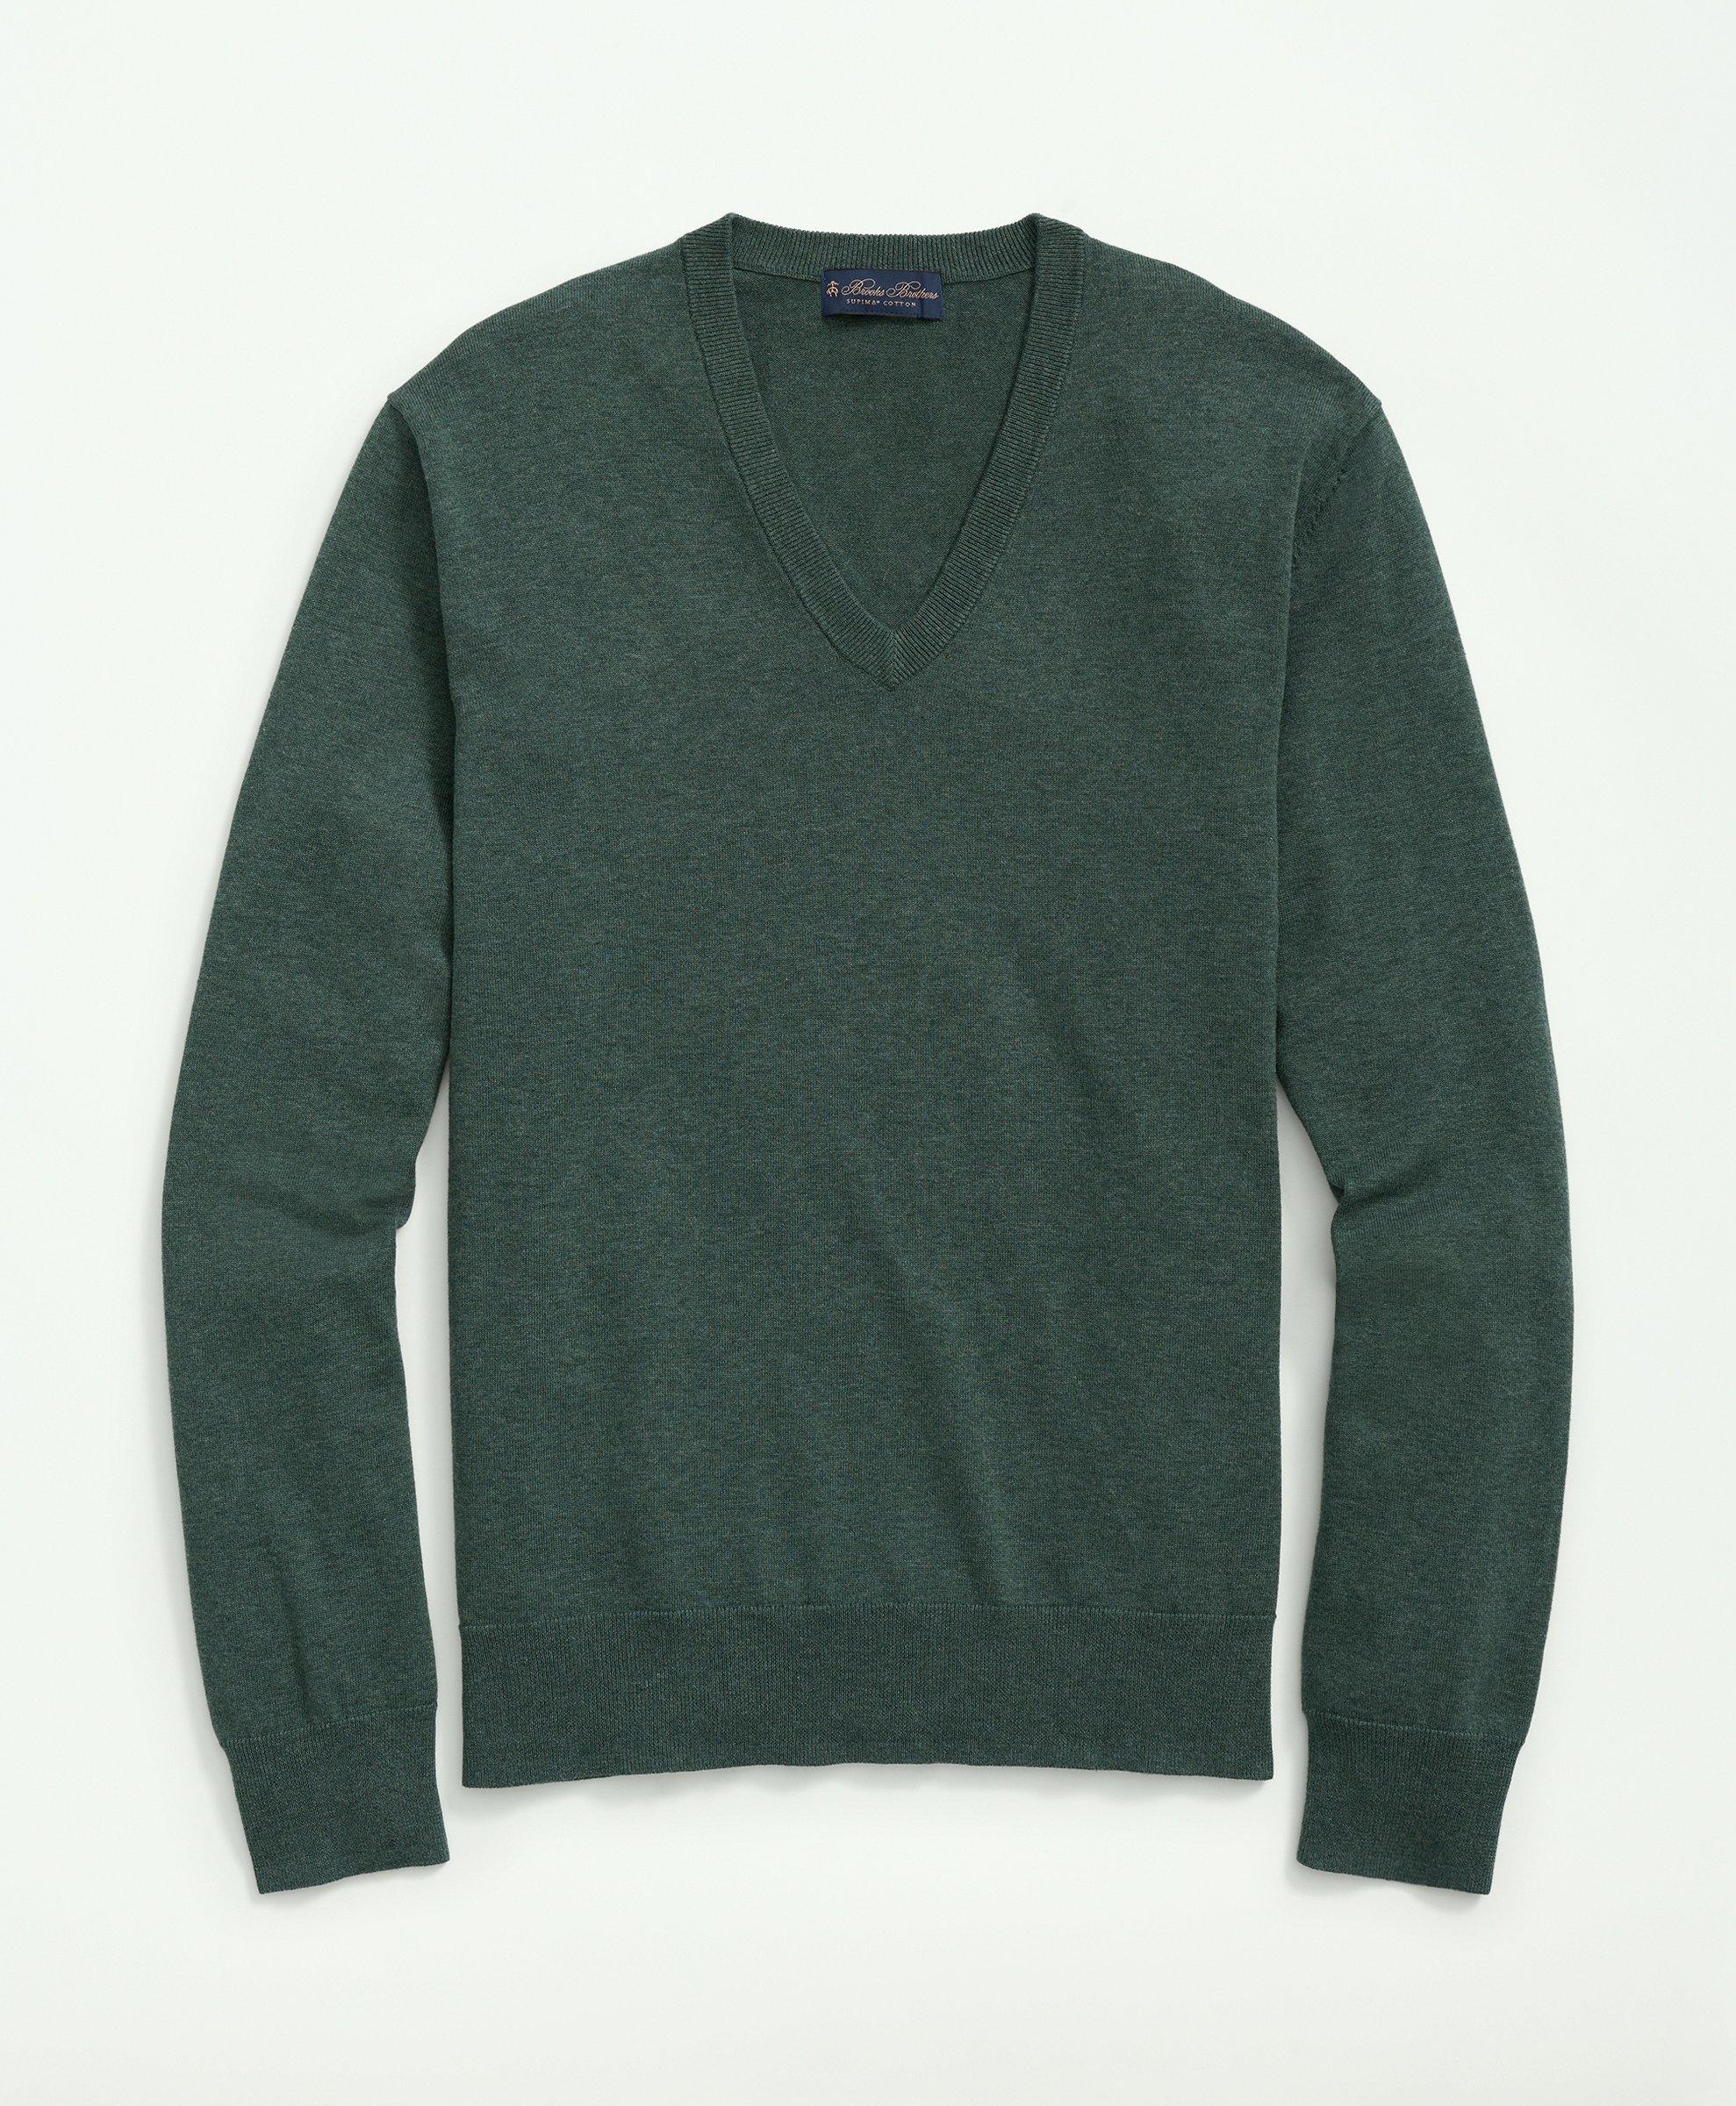 Brooks Brothers Big & Tall Supima Cotton V-neck Sweater | Dark Green | Size 2x Tall